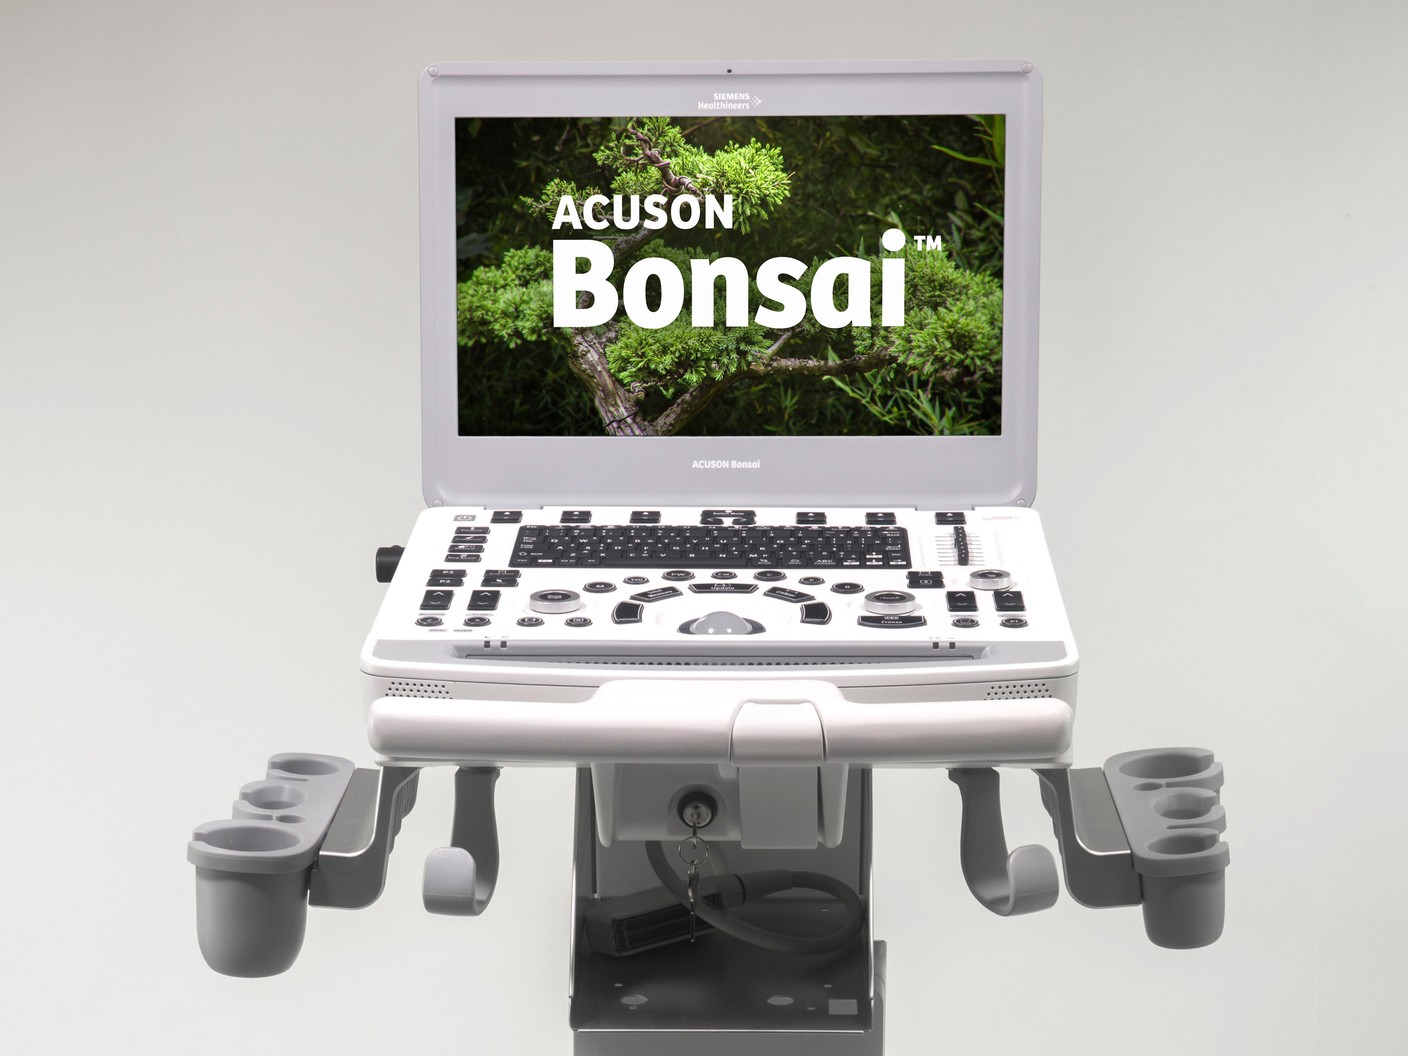 ACUSON Bonsai